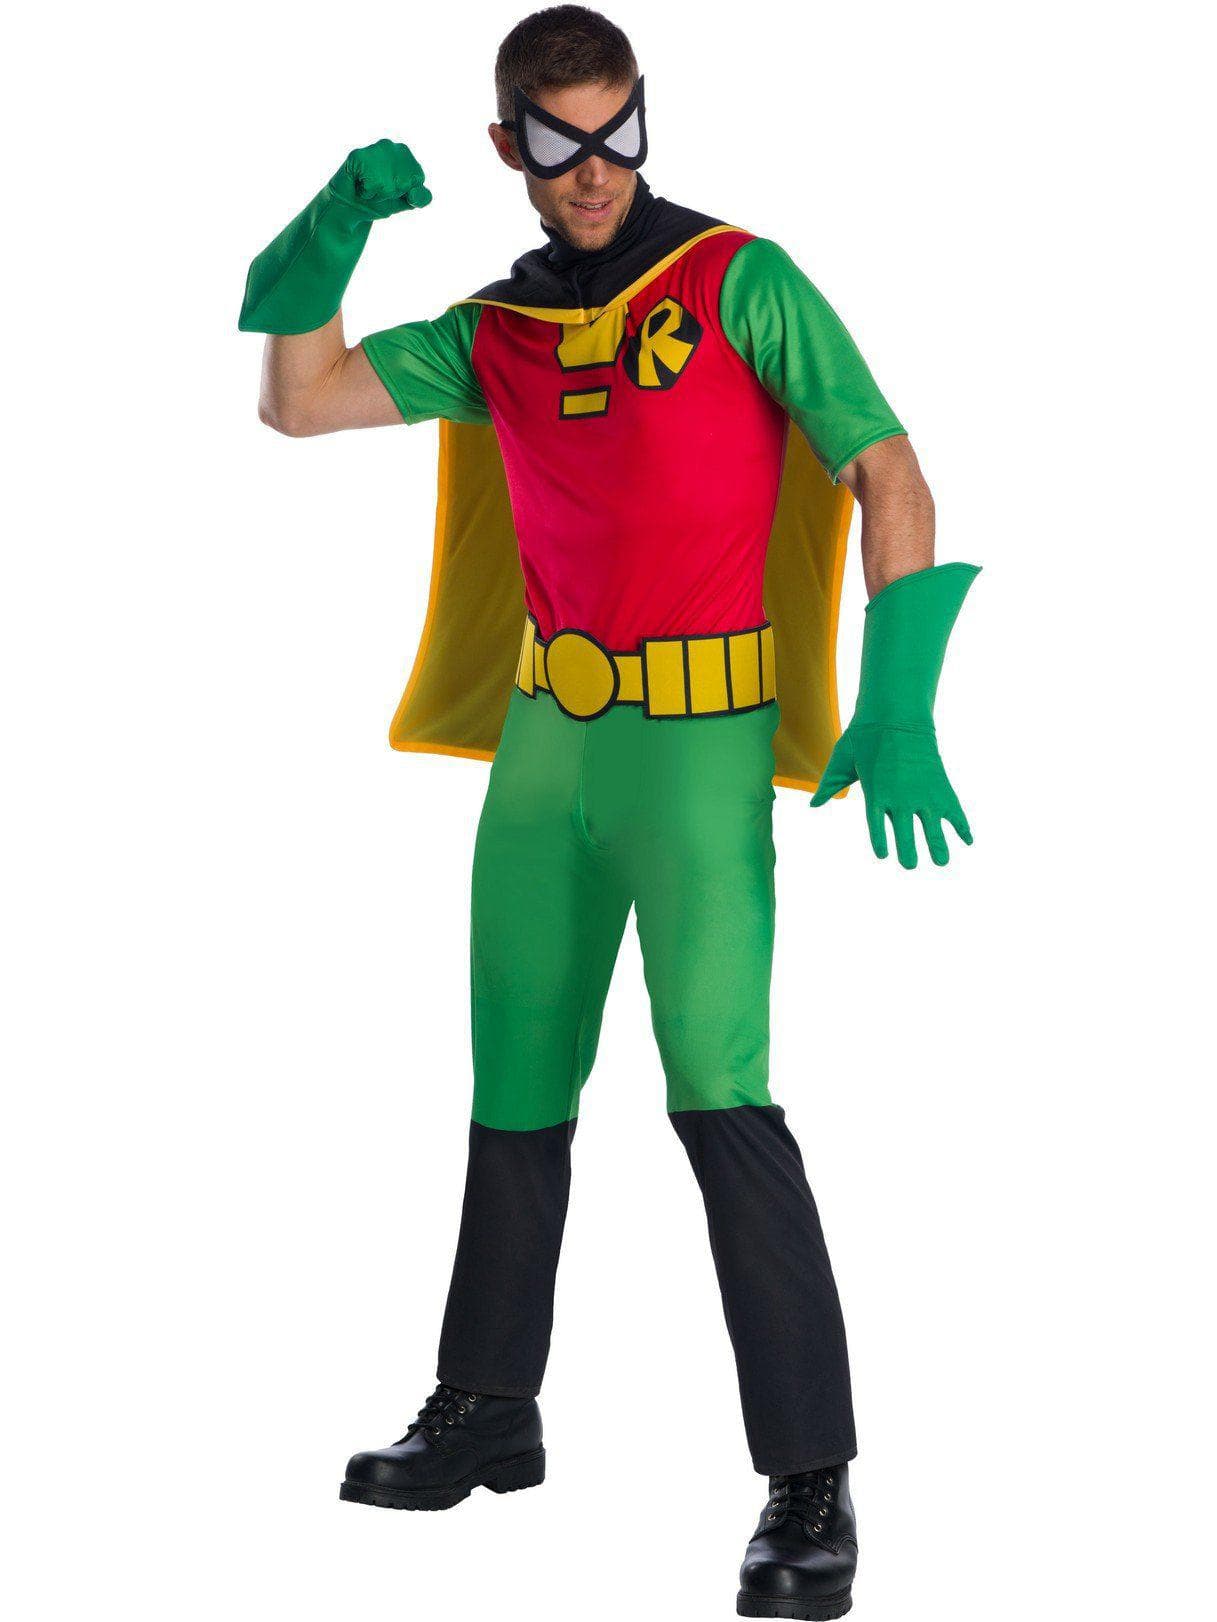 Adult DC Comics Robin Costume - costumes.com